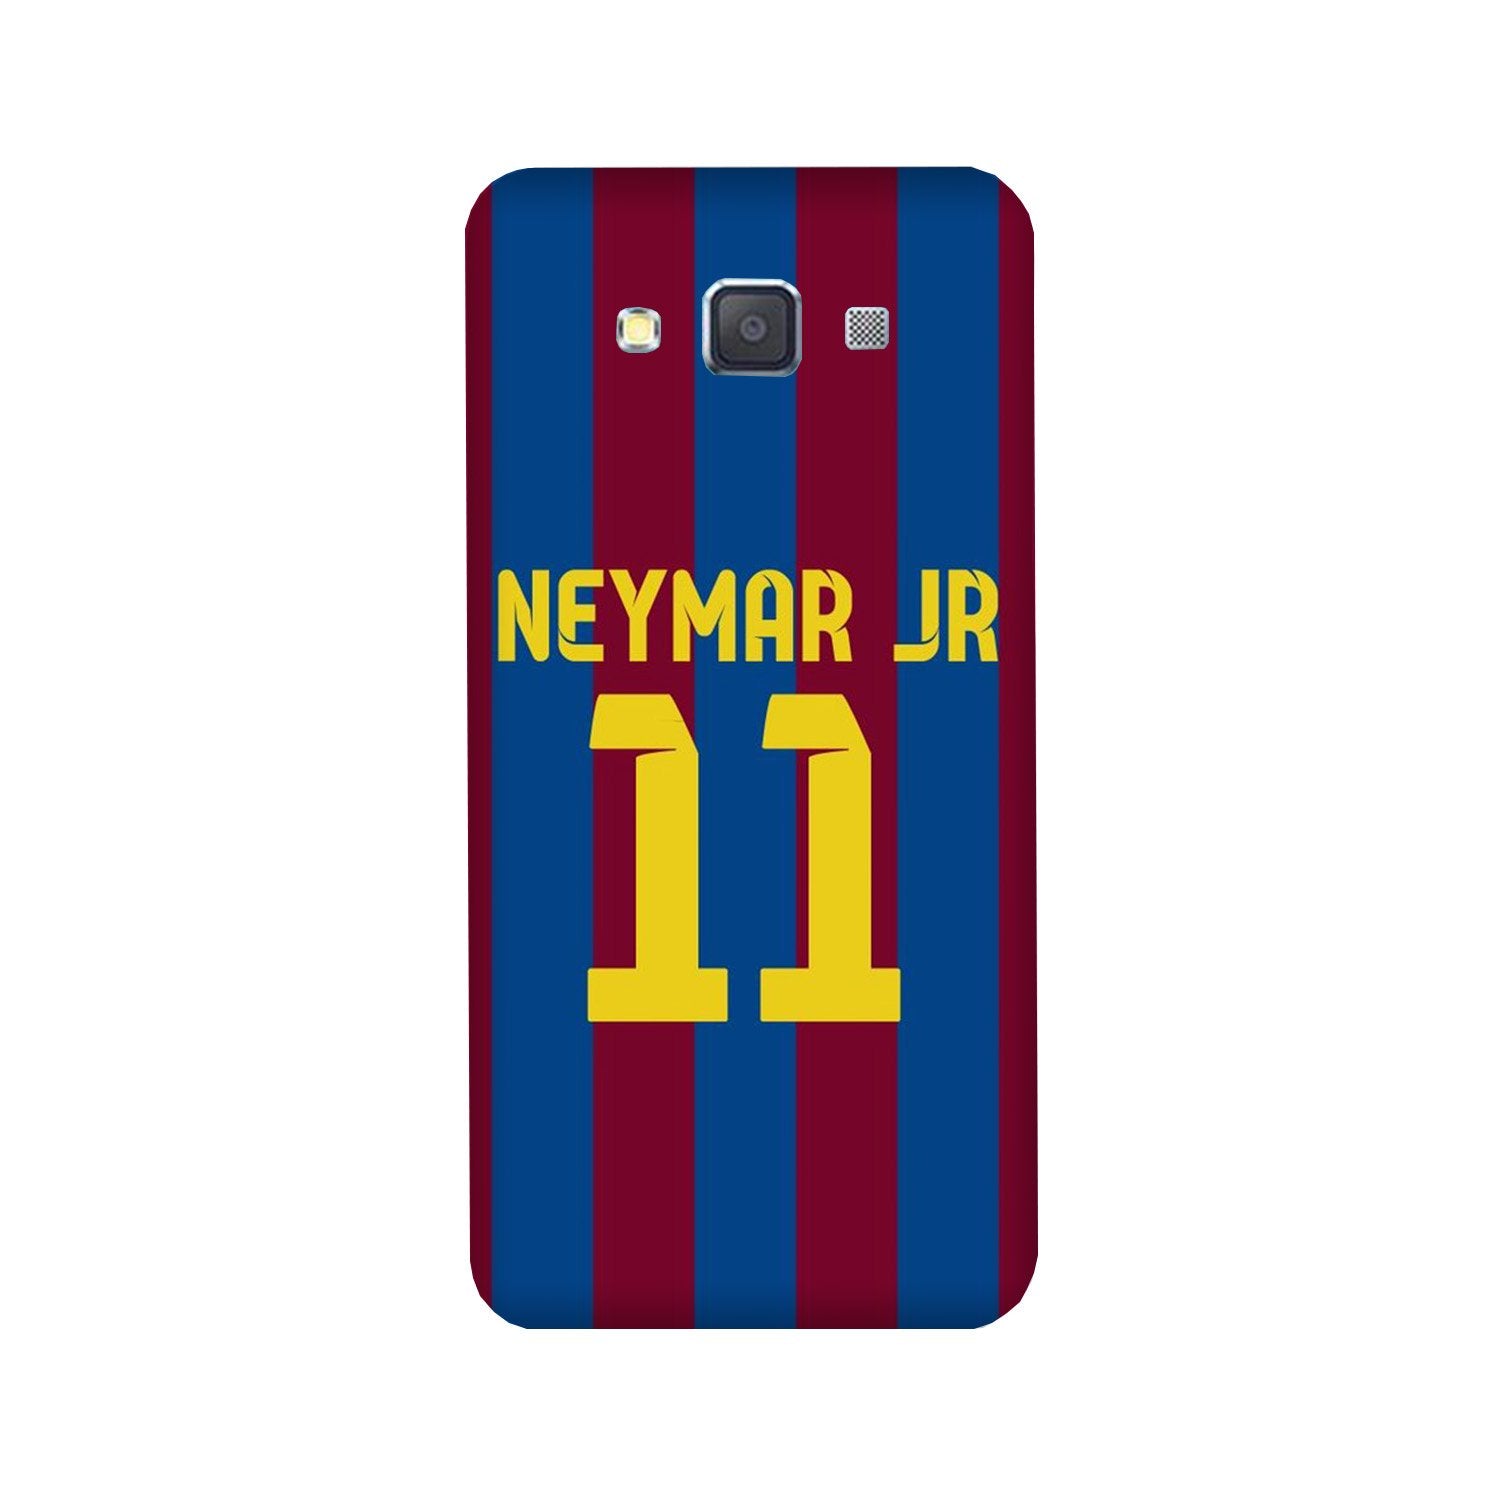 Neymar Jr Case for Galaxy Grand 2(Design - 162)